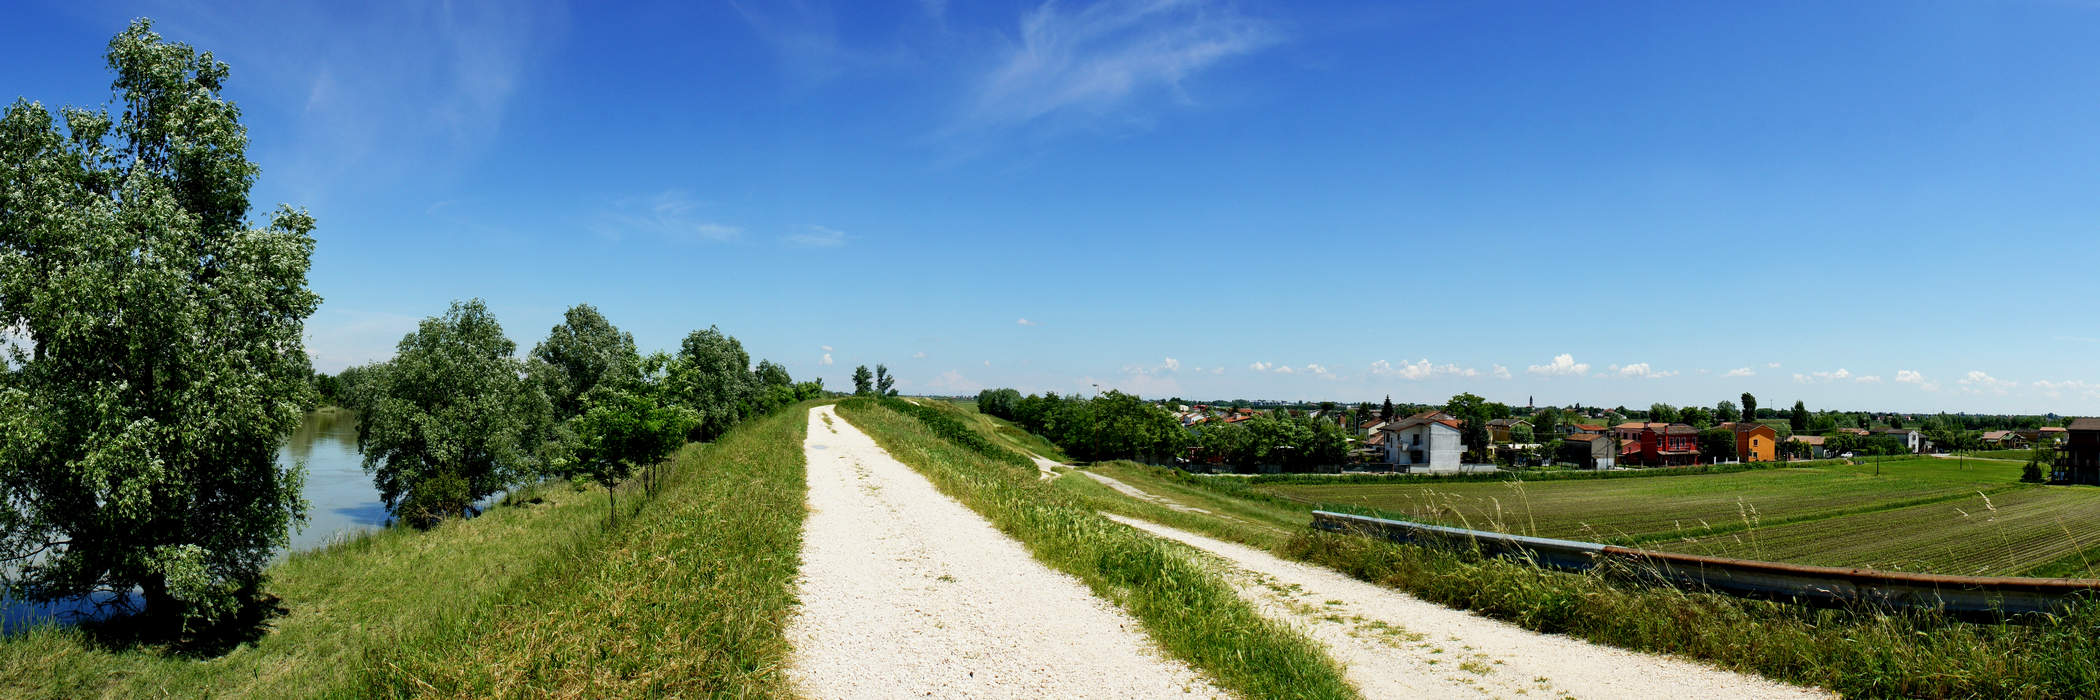 il fiume Adige e la campagna dai pressi di Rovigo, Boara Polesine